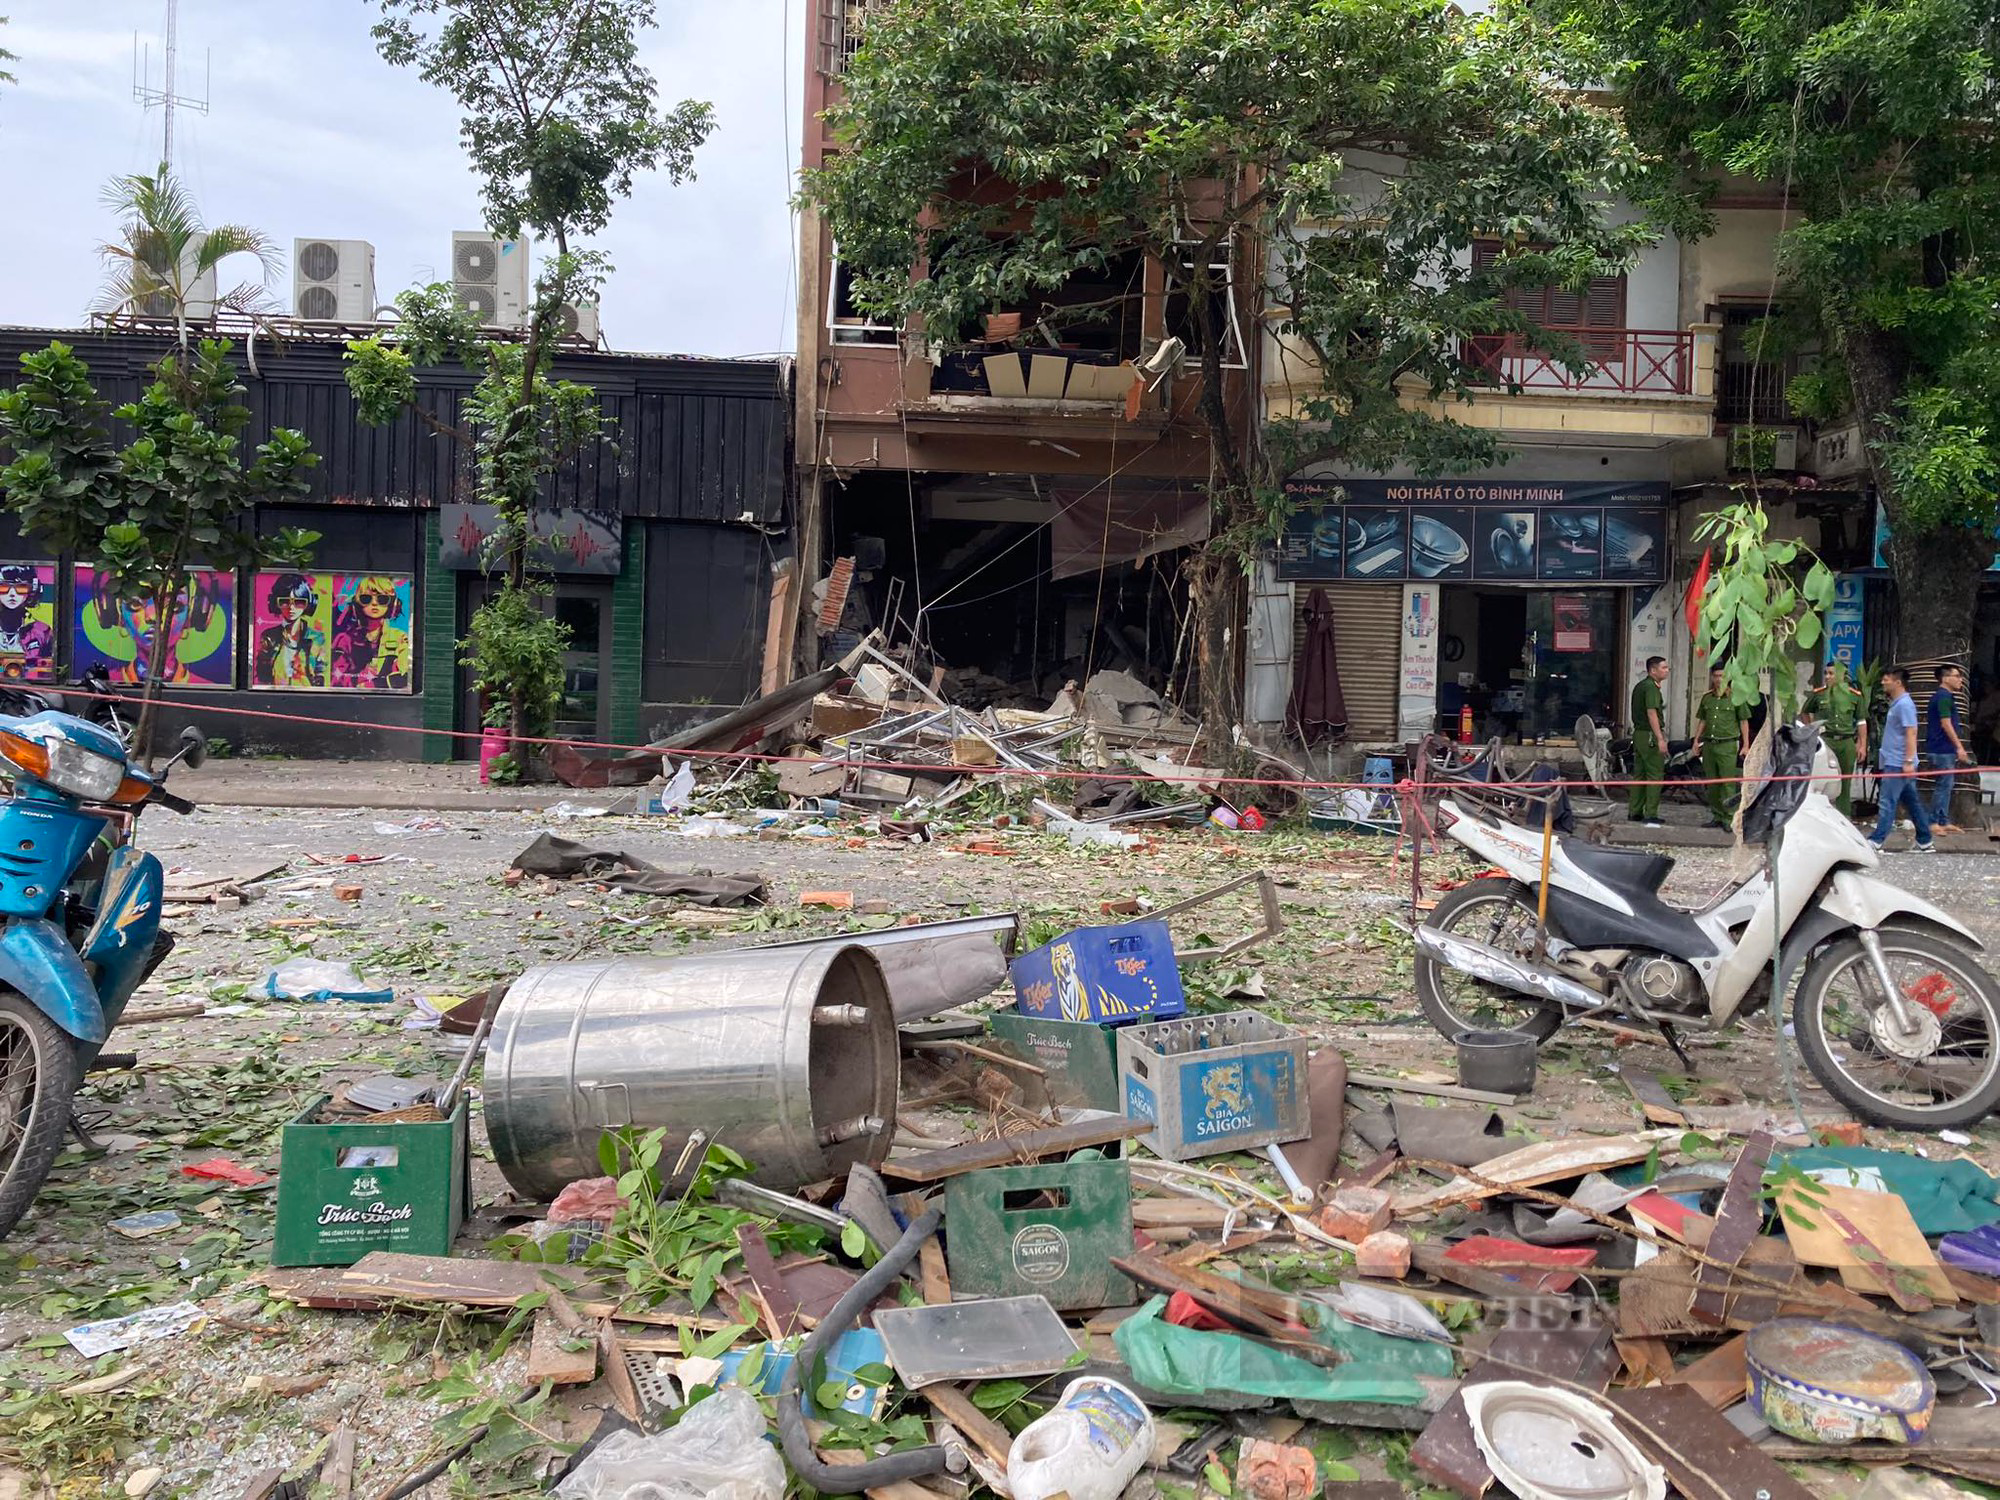 Hiện trường tan hoang sau nổ lớn cực lớn quán lẩu ở phố Yên Phụ, nhiều người bị thương nặng - Ảnh 4.